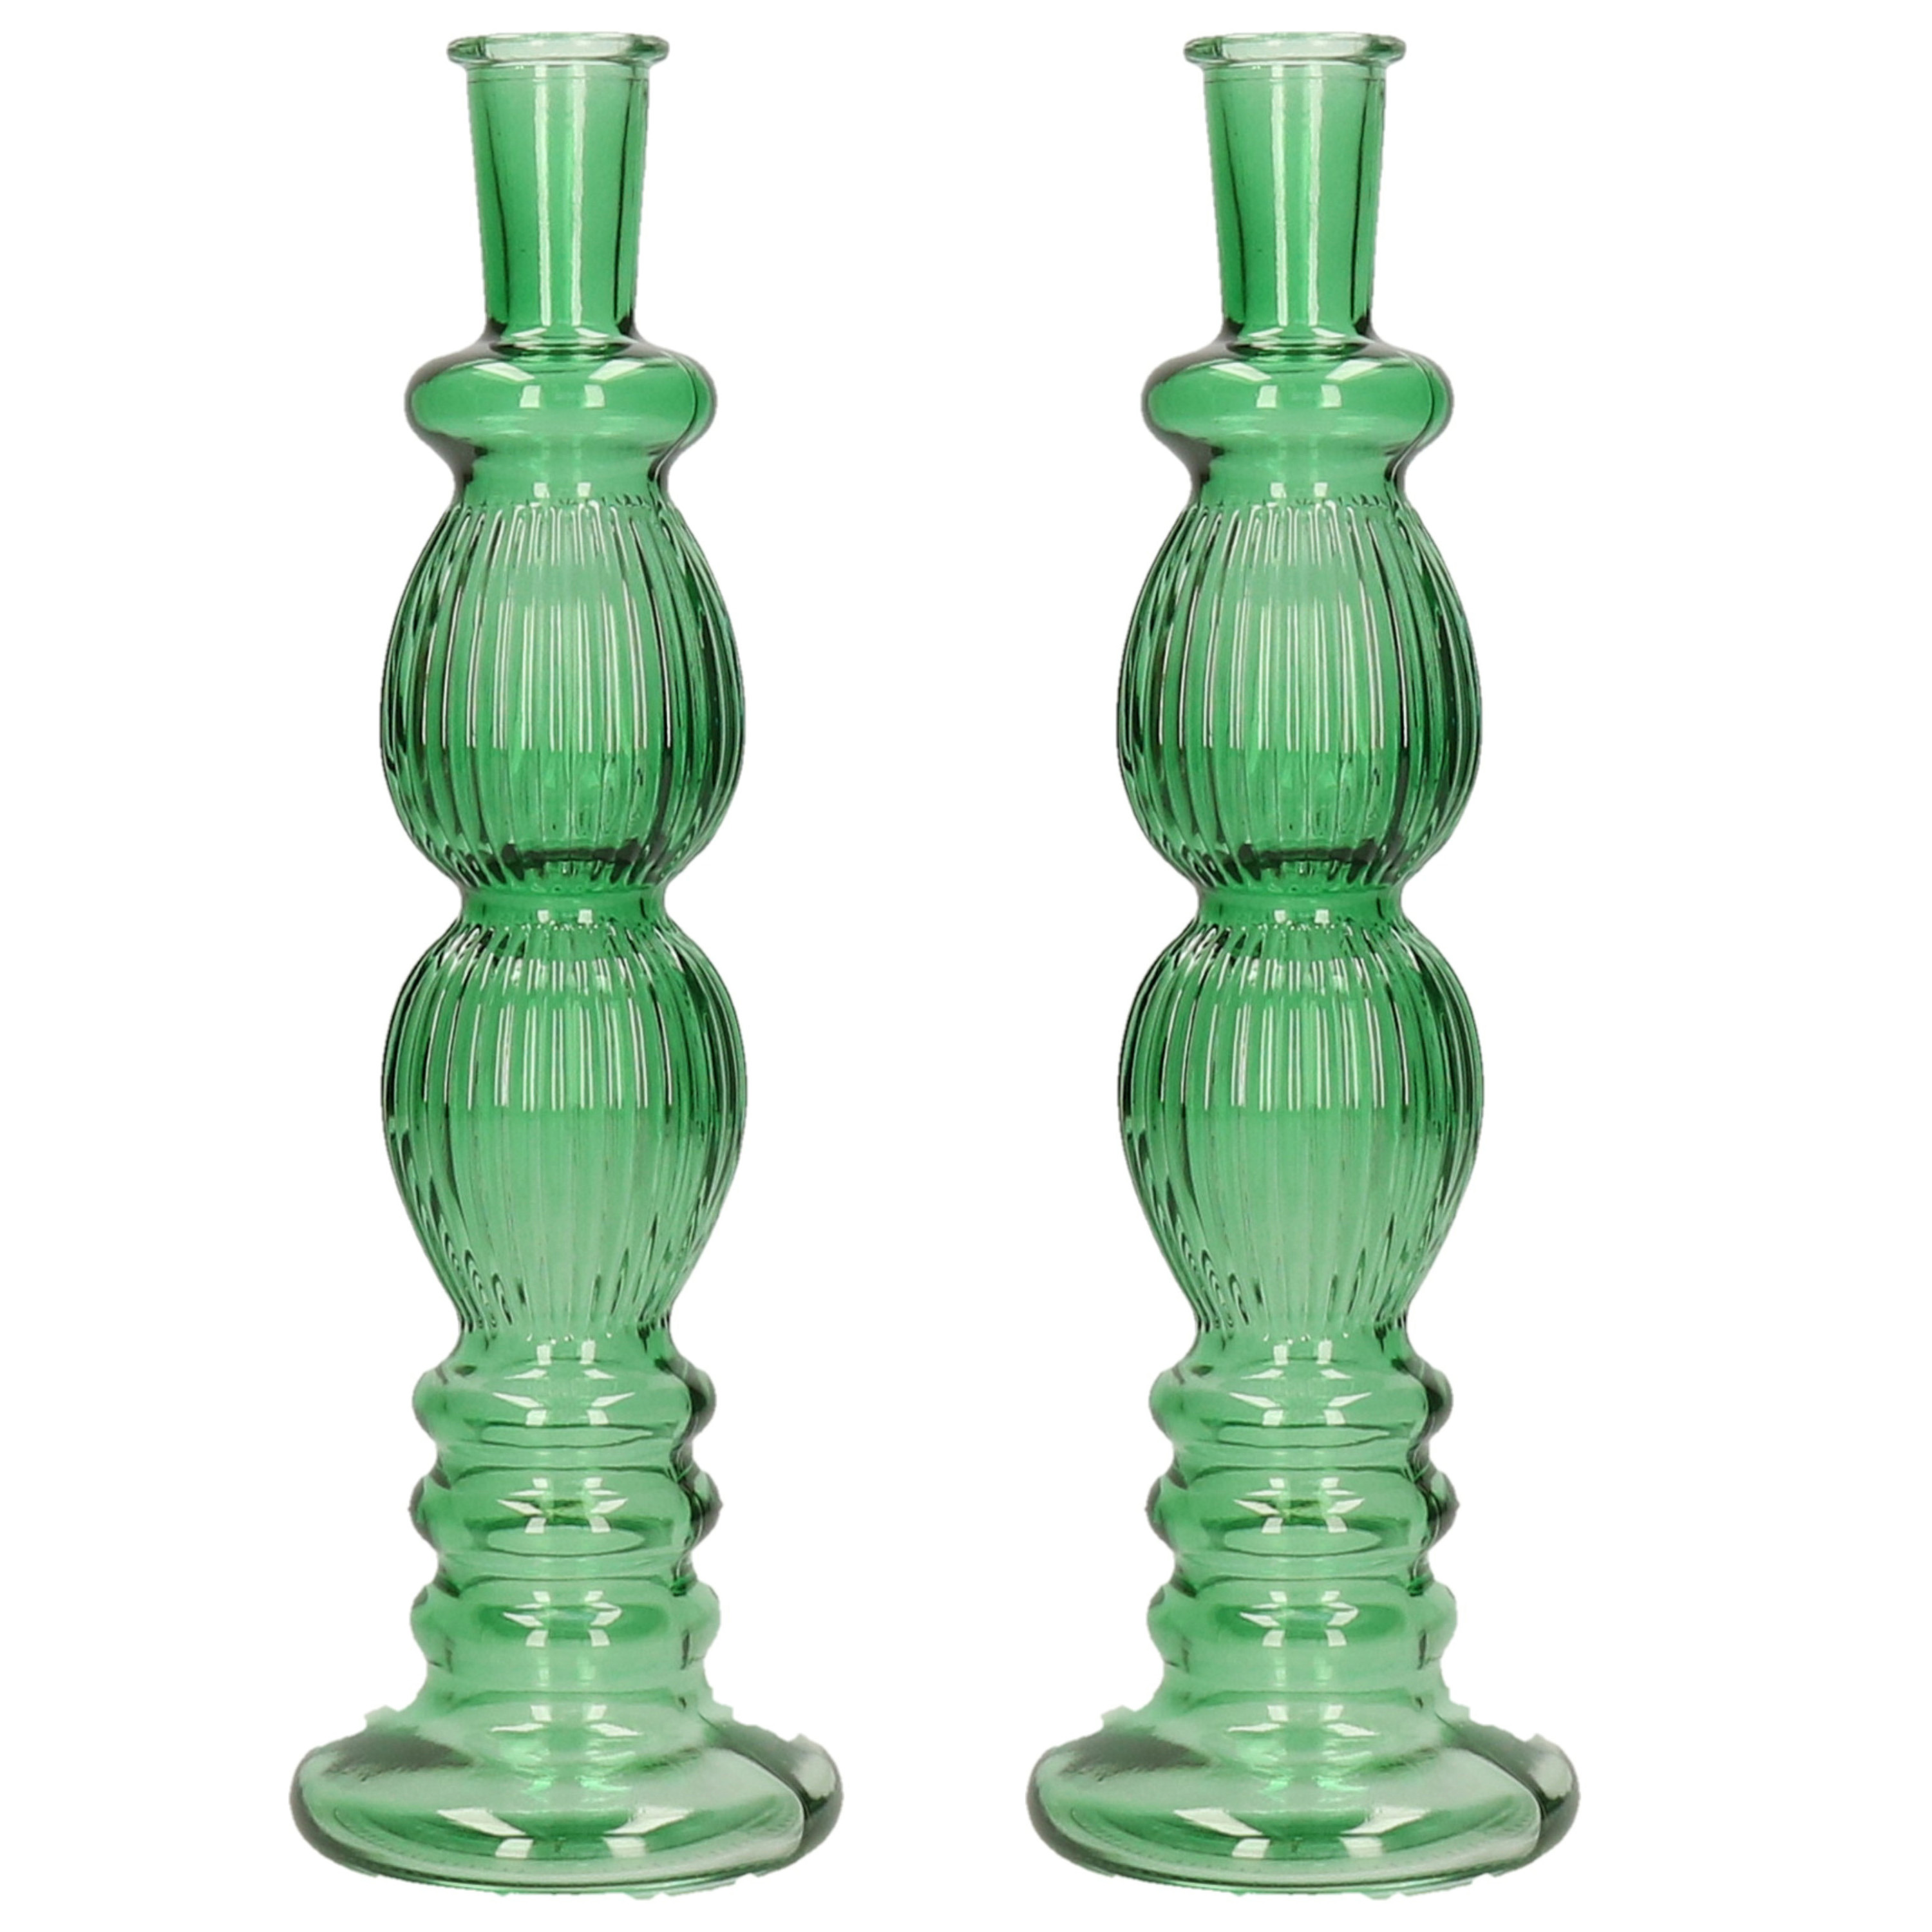 Kaarsen kandelaar Florence 2x groen glas ribbel D9 x H28 cm